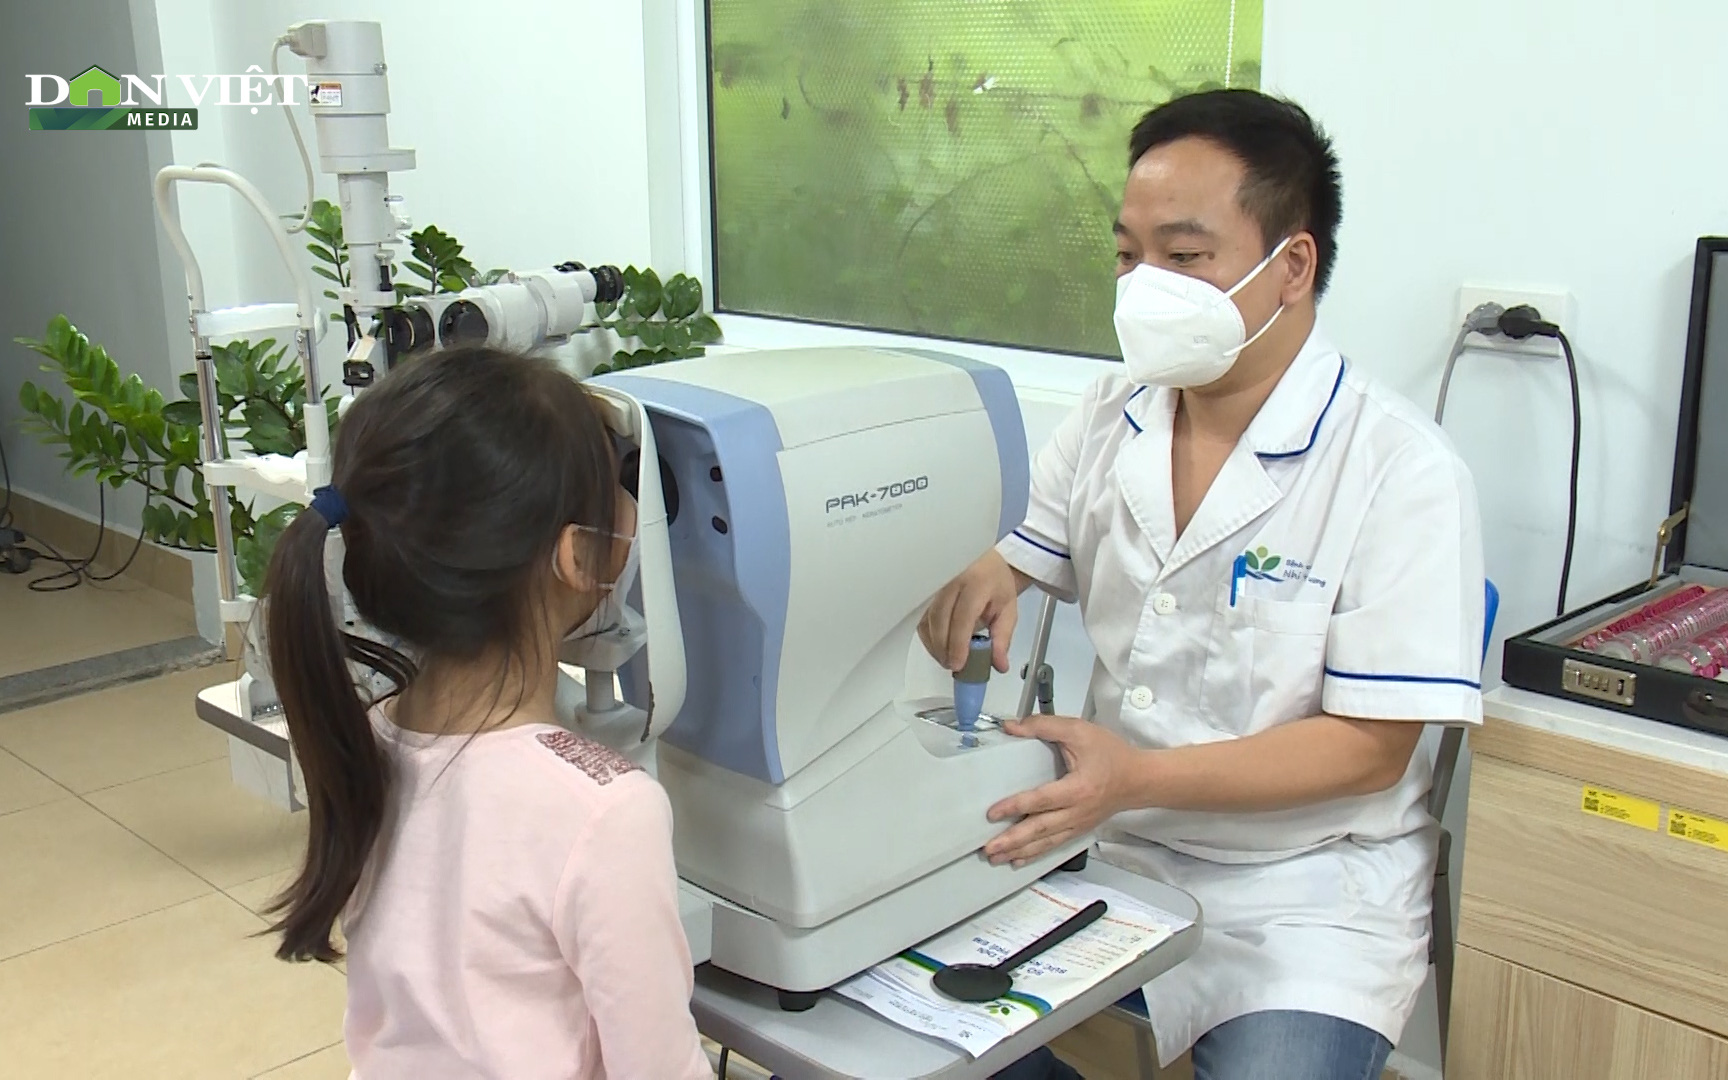 Video: Gia tăng trẻ đi khám các bệnh lý về mắt sau nghỉ dịch Covid-19